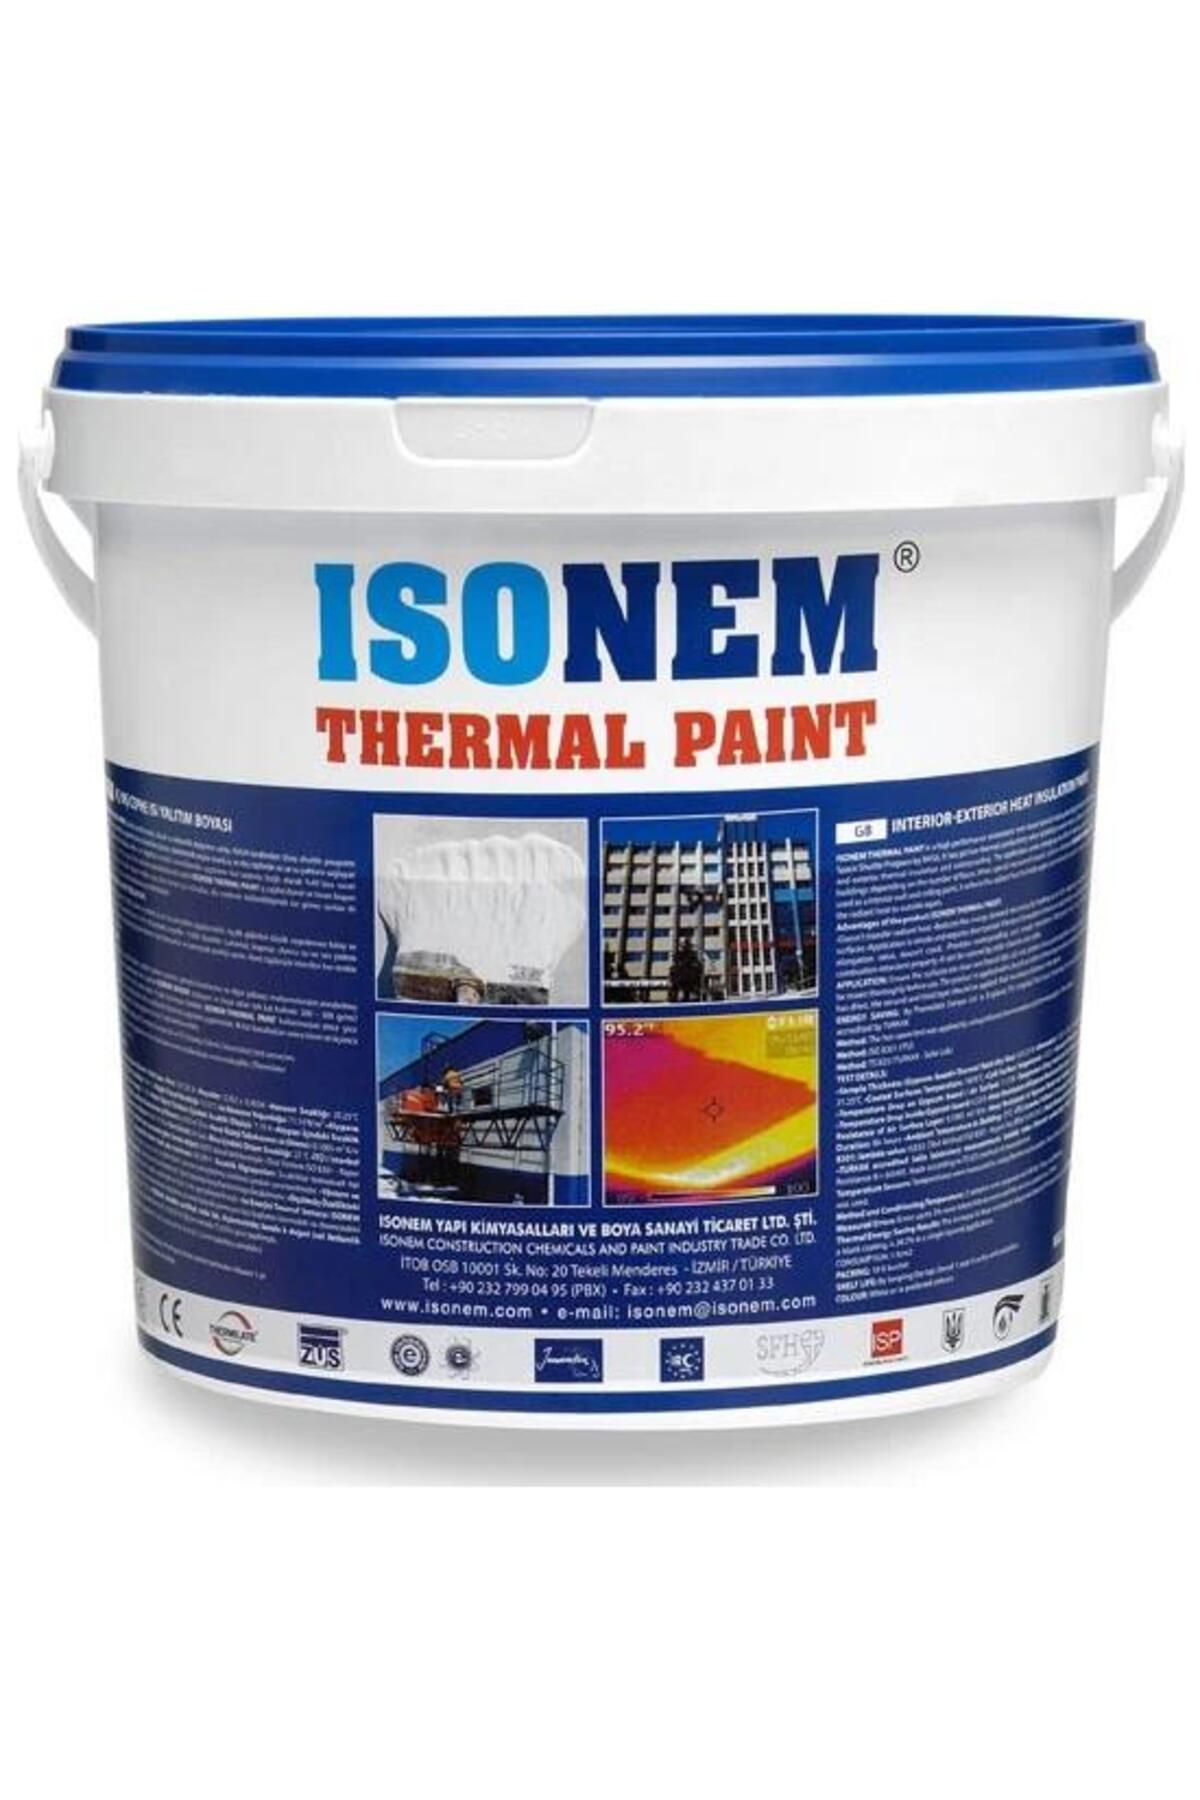 Isonem Thermal Paint Isı Yalıtım Boyası 5 Lt Beyaz